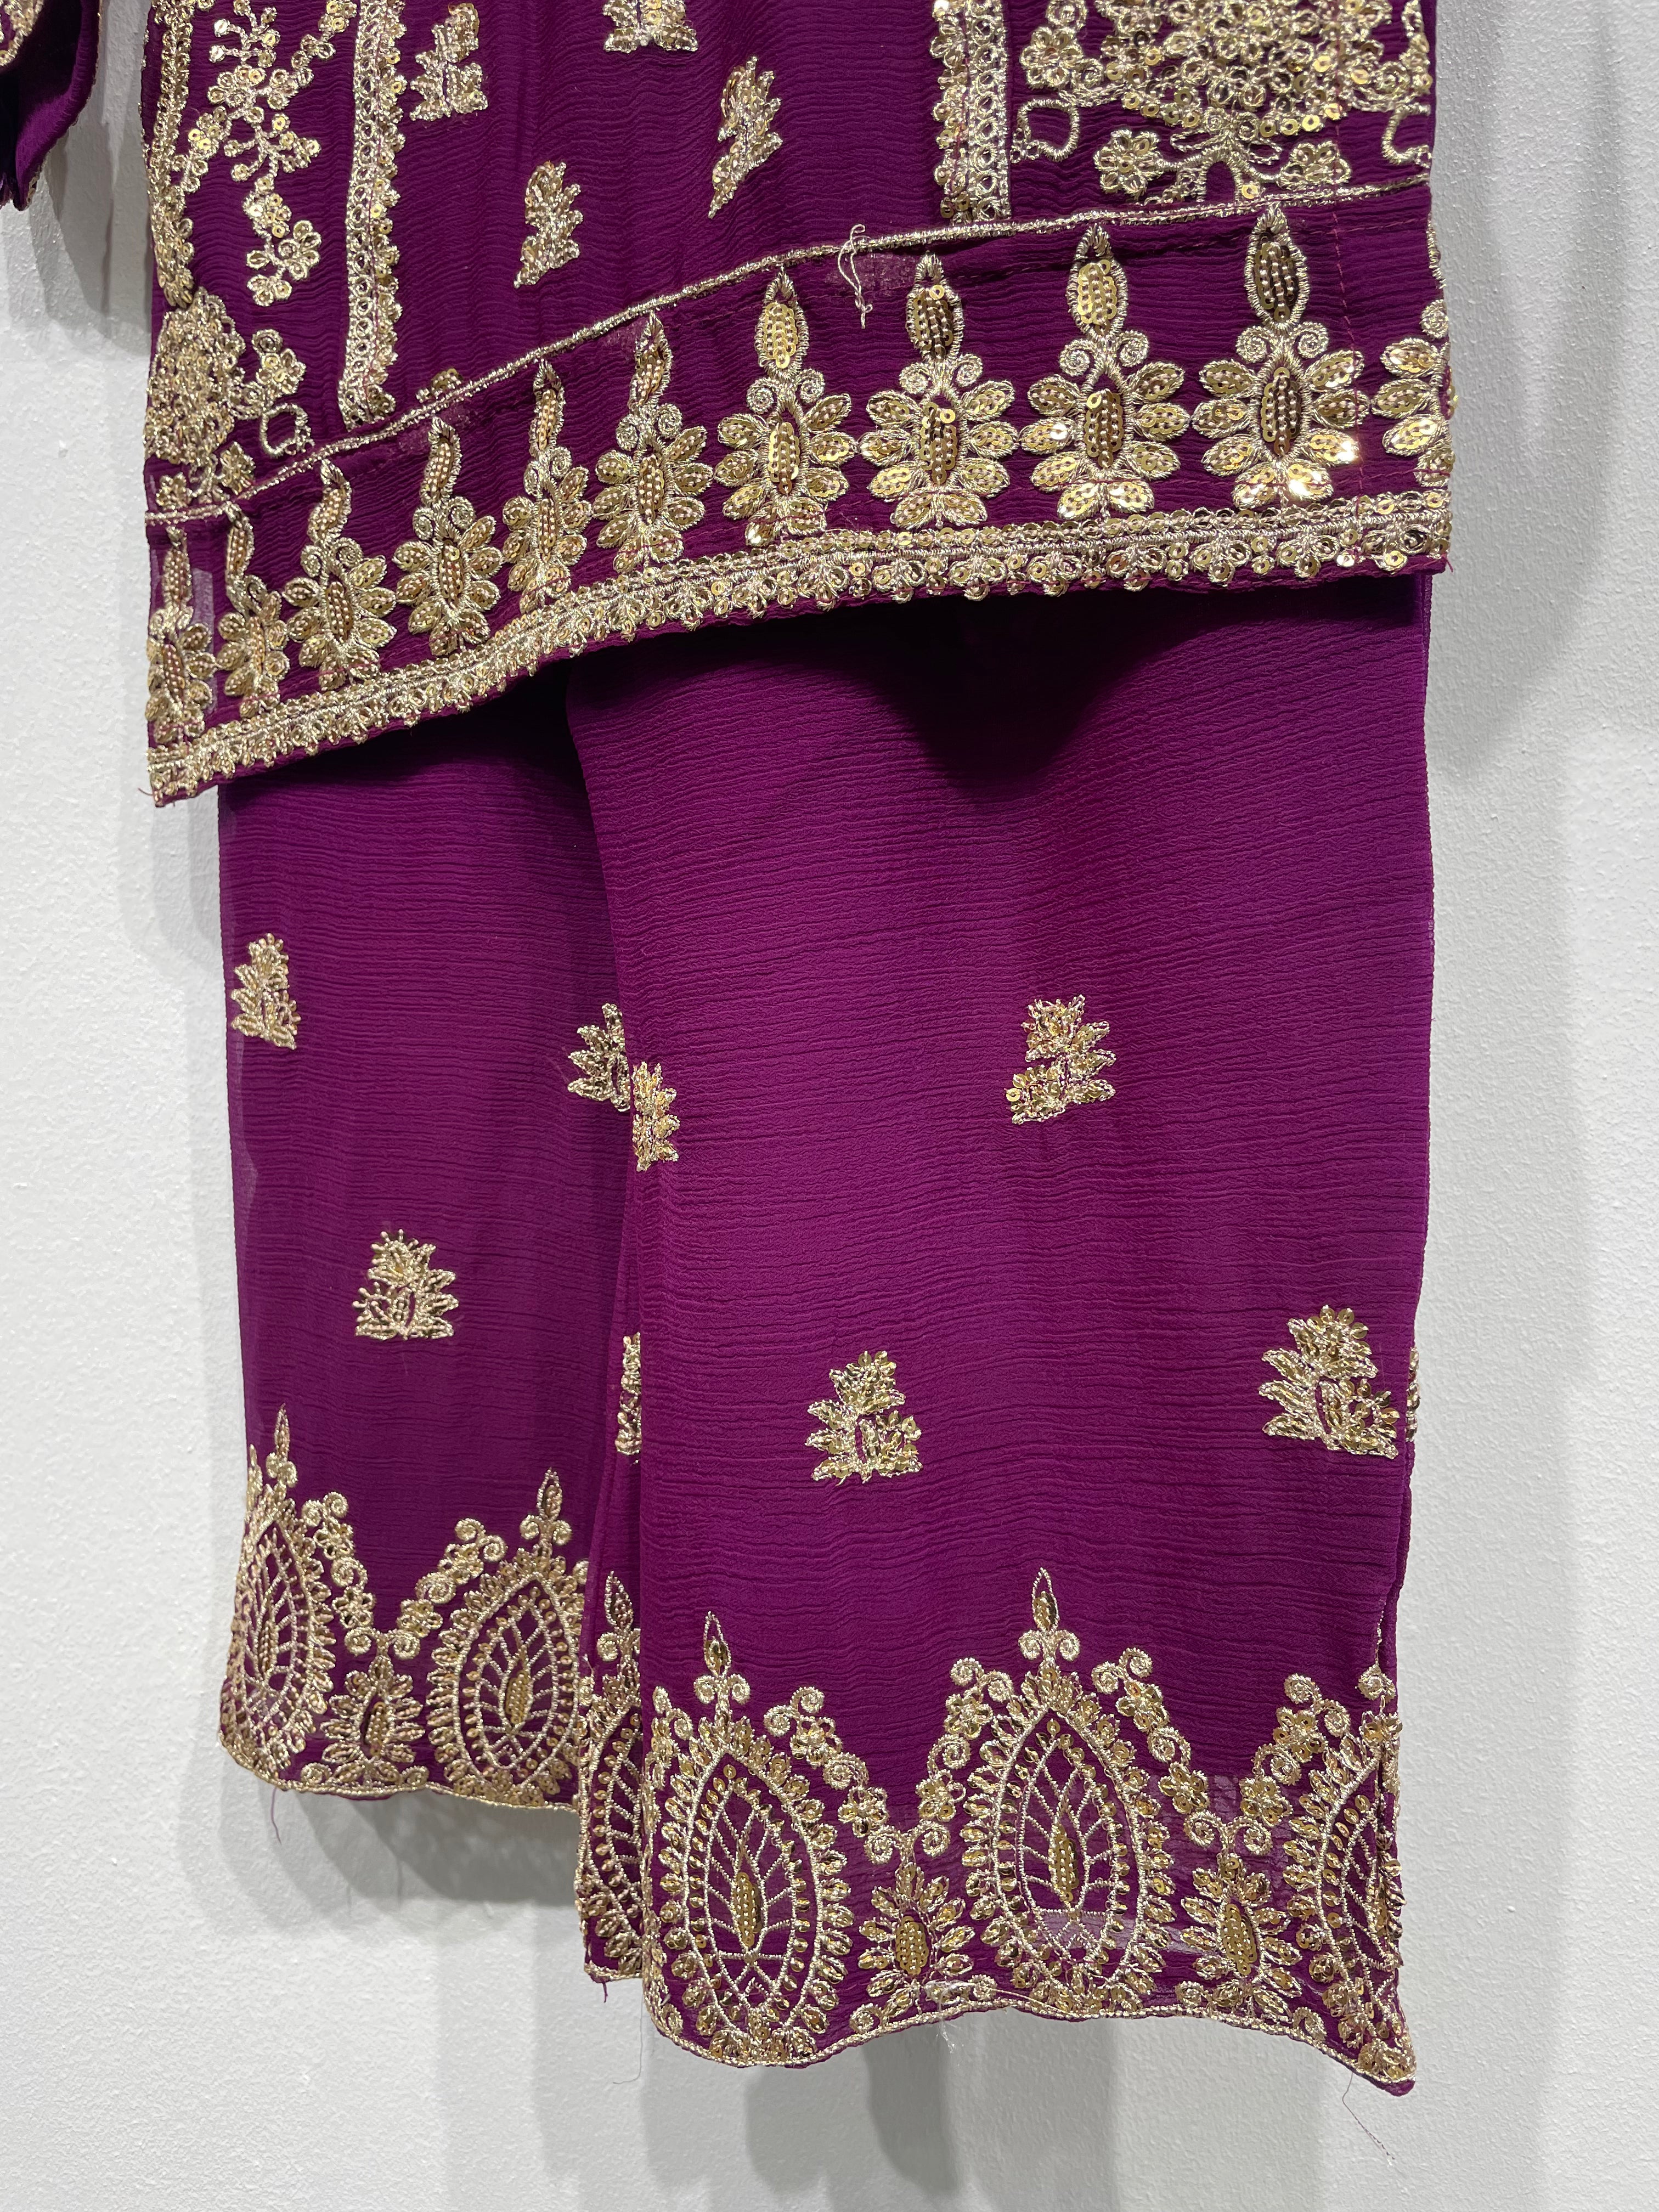 Light Purple Chiffon Plazo - Gold Embroidery - 3Pc